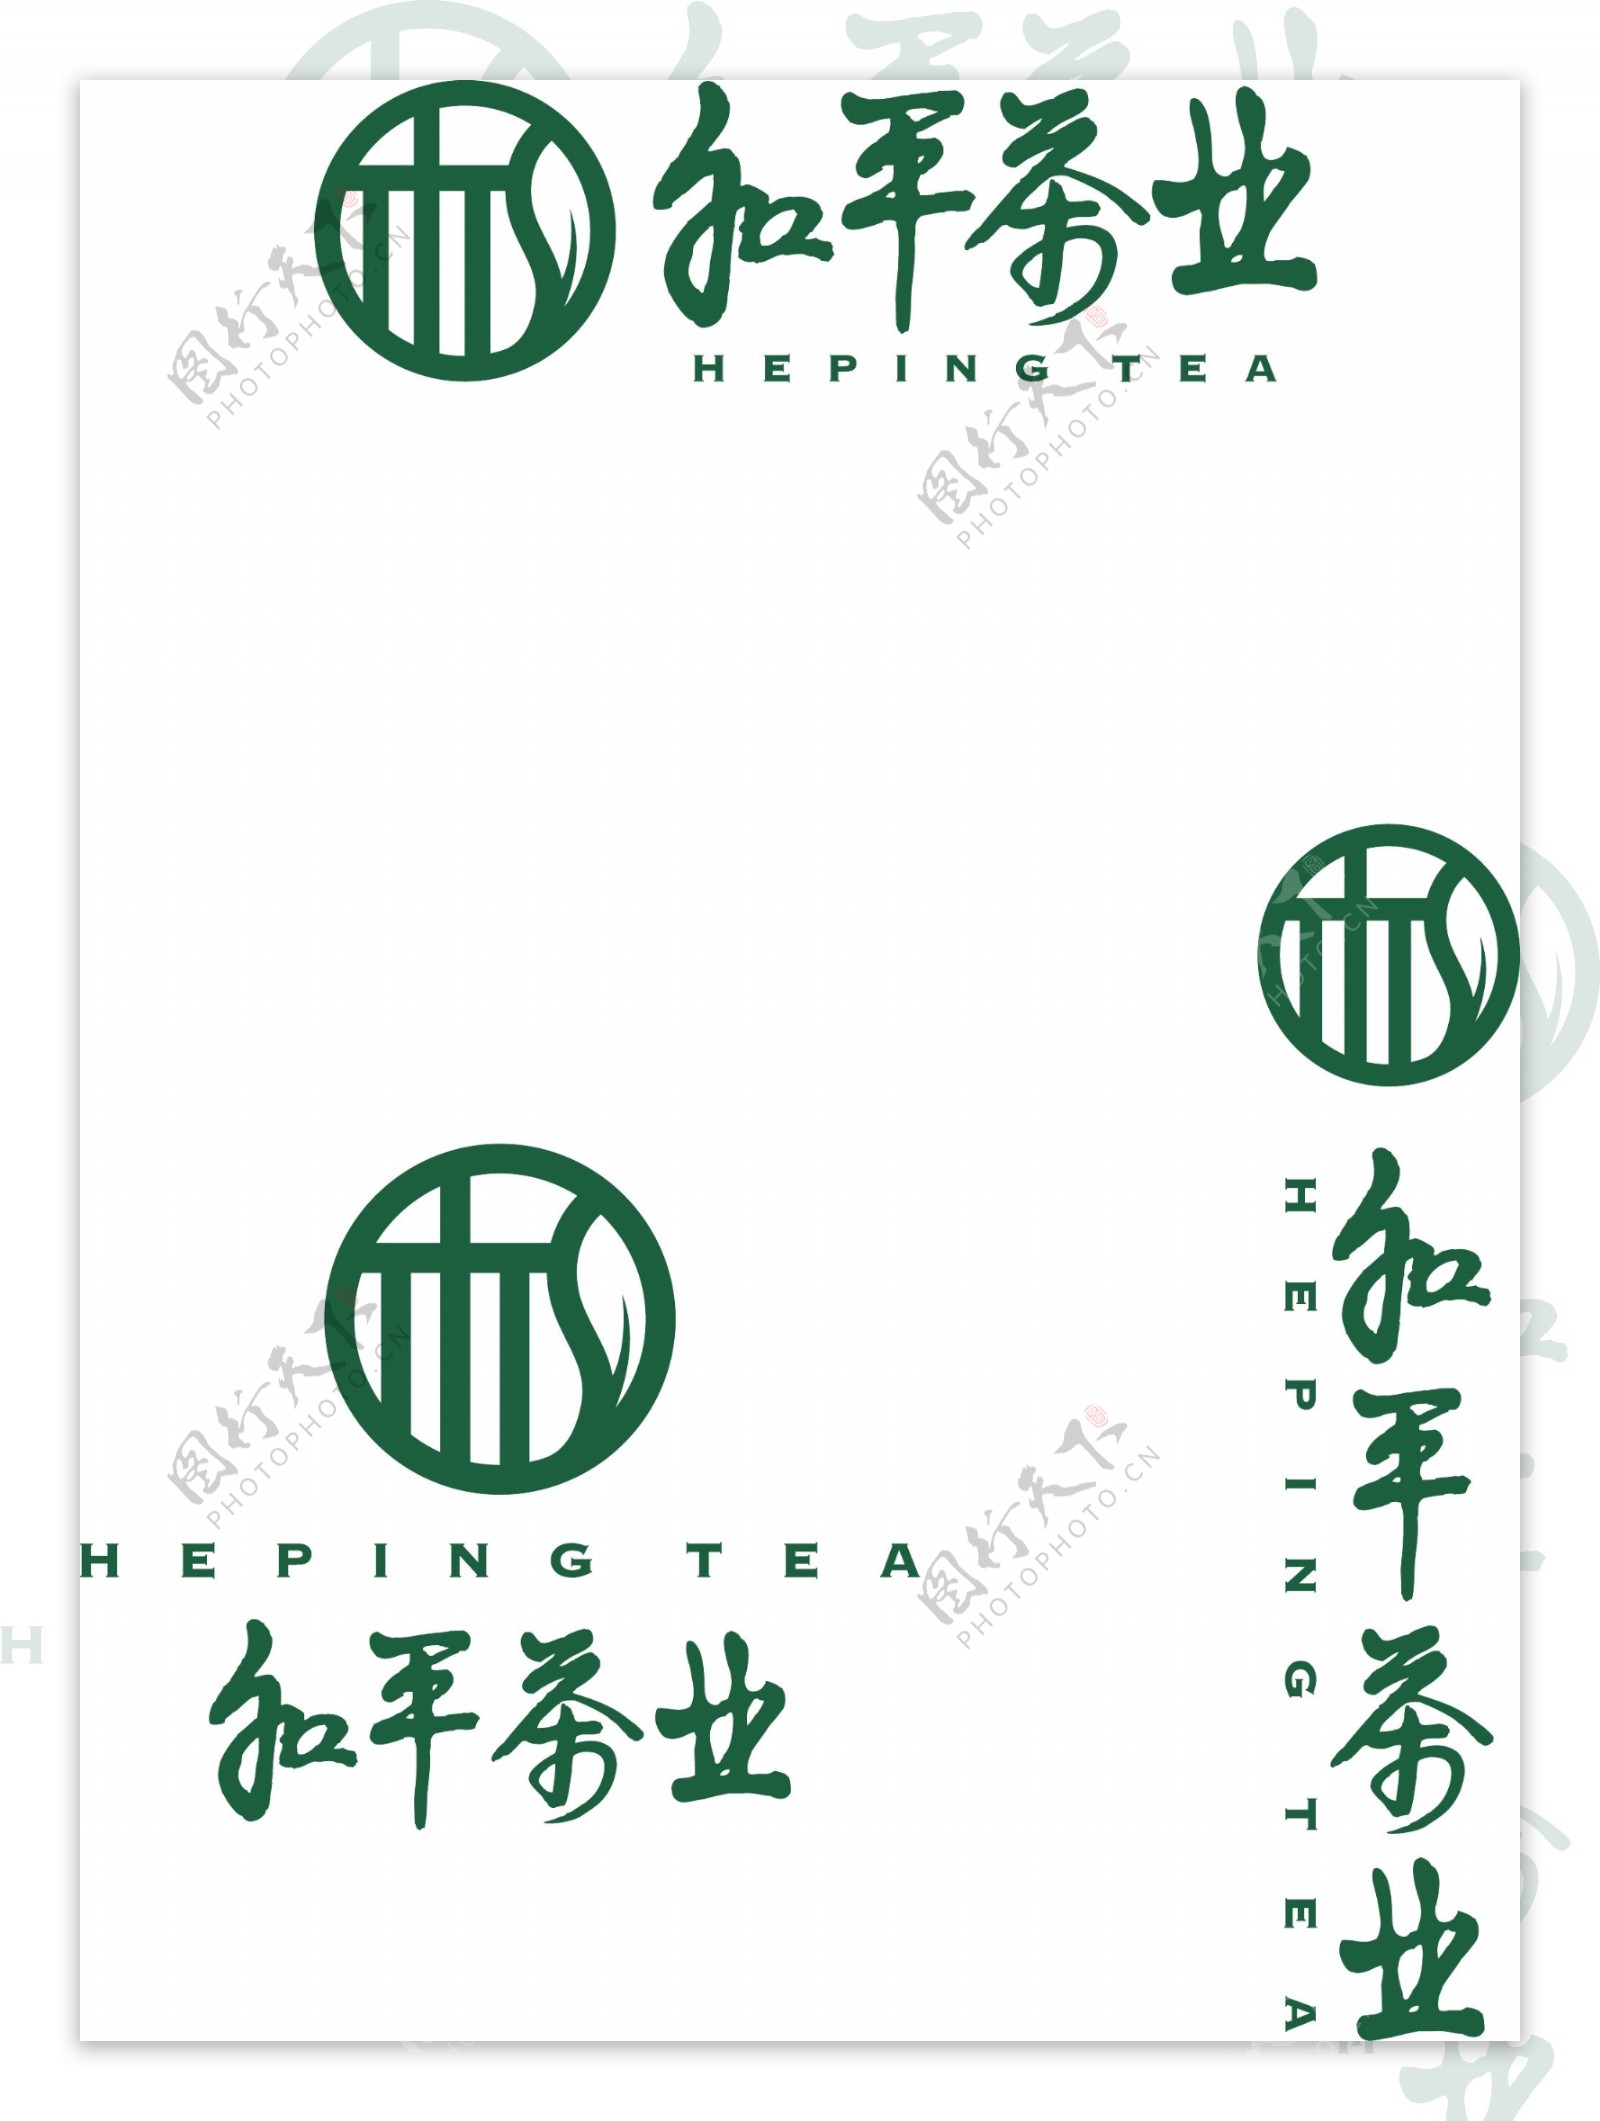 和平茶业标志logo